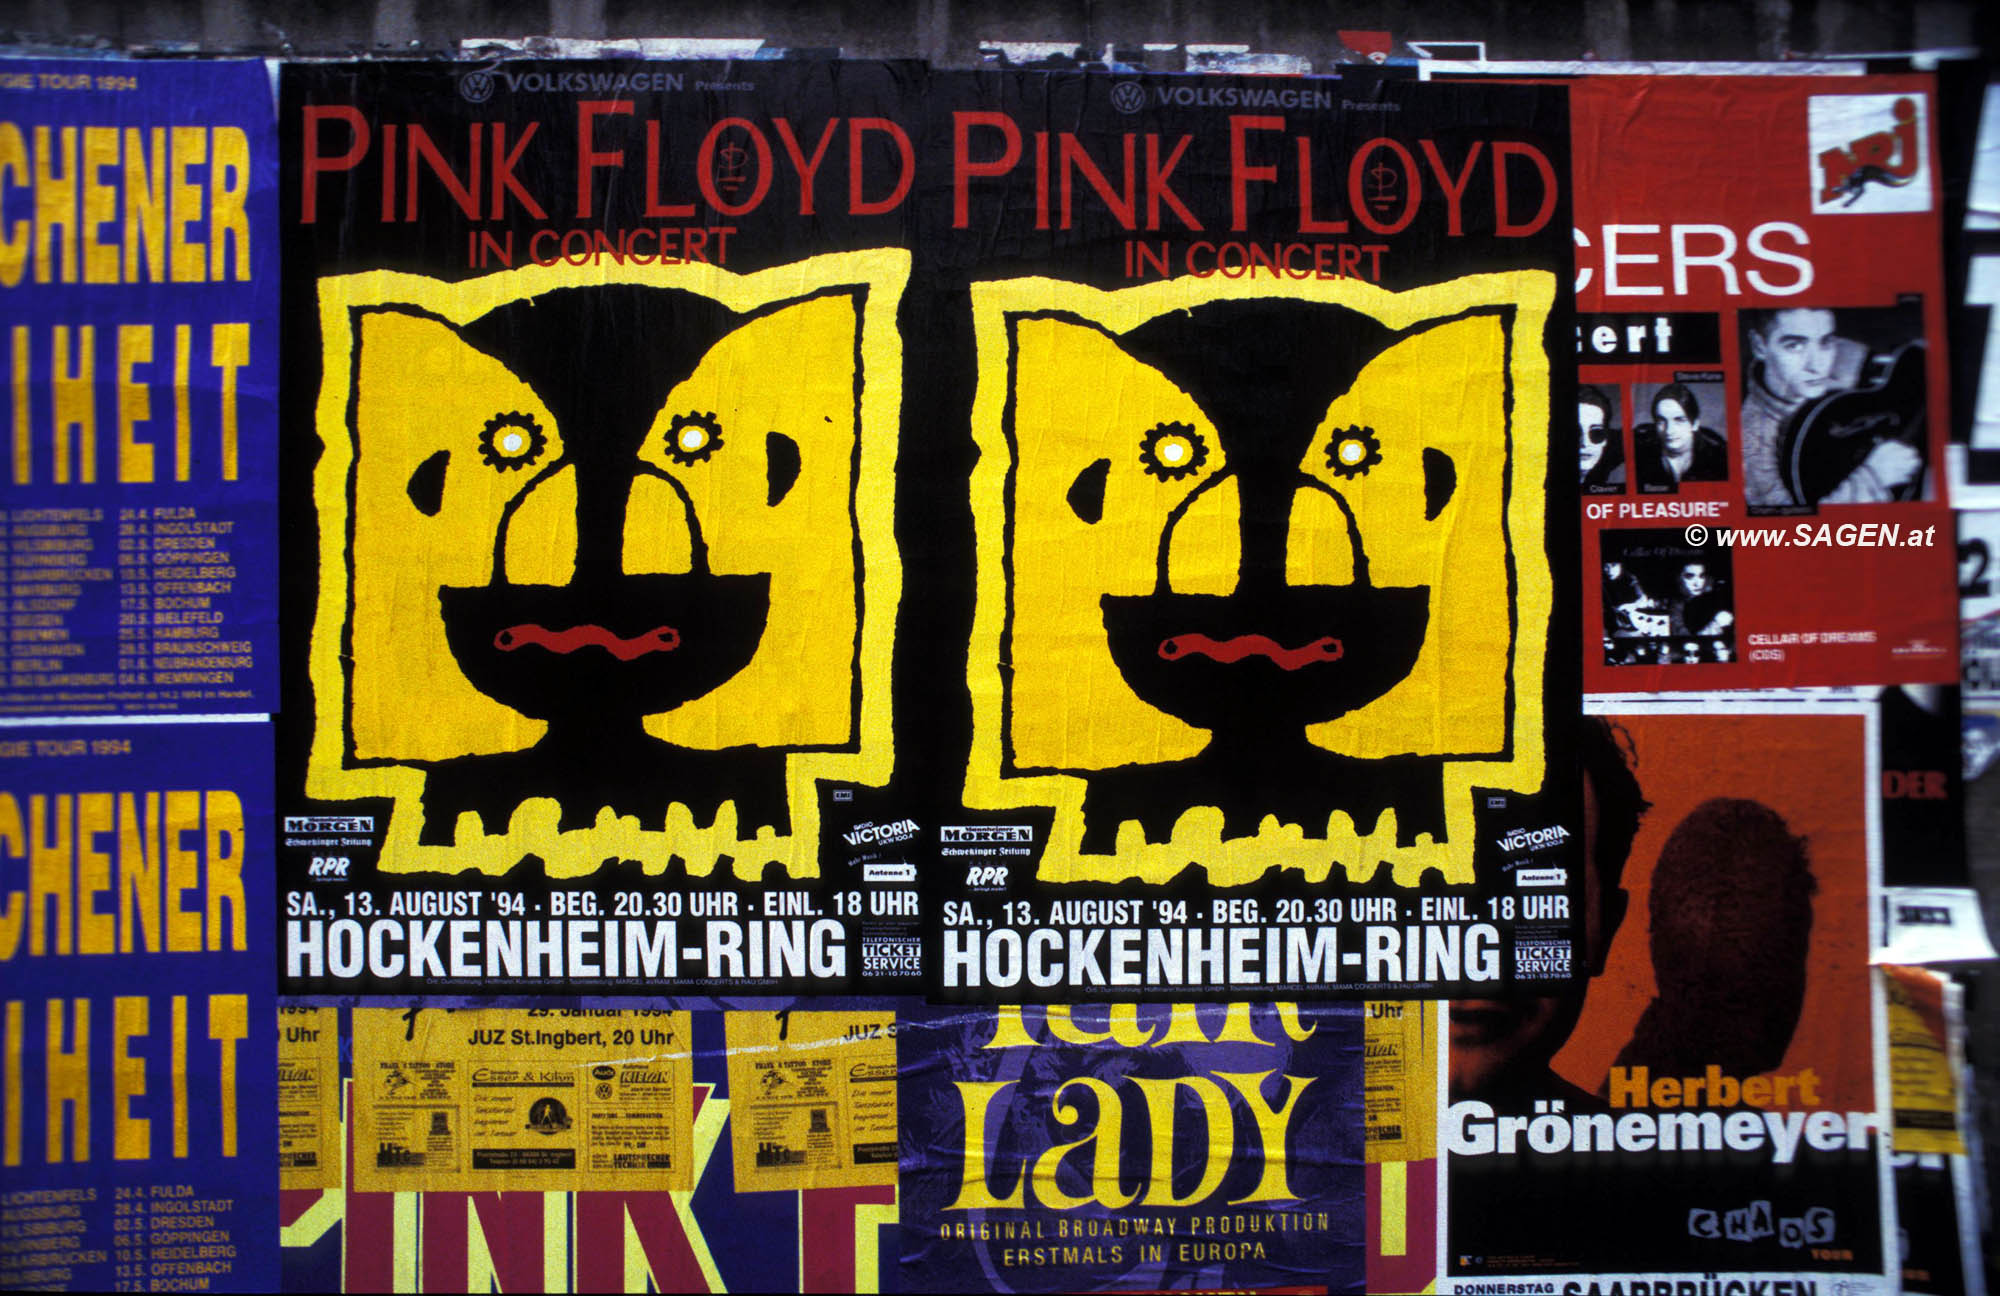 Pink Floyd Hockenheim-Ring 1994 auf Plakatwand